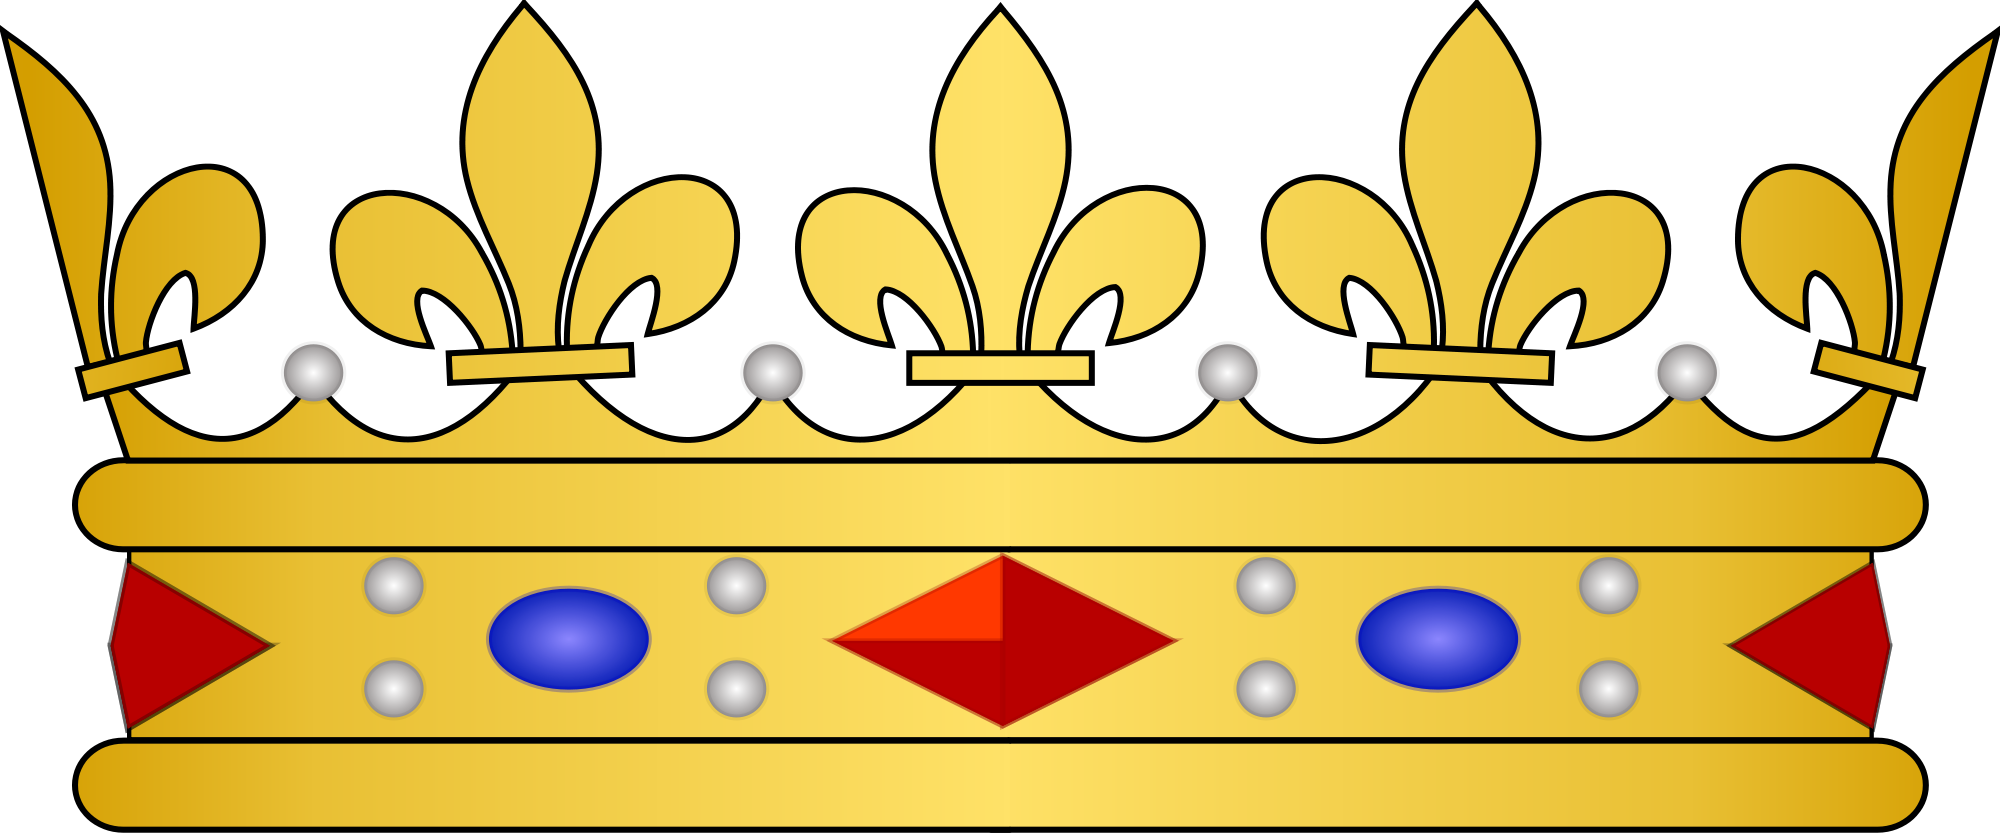 Golden Prince Crown GRATUIt PNG image